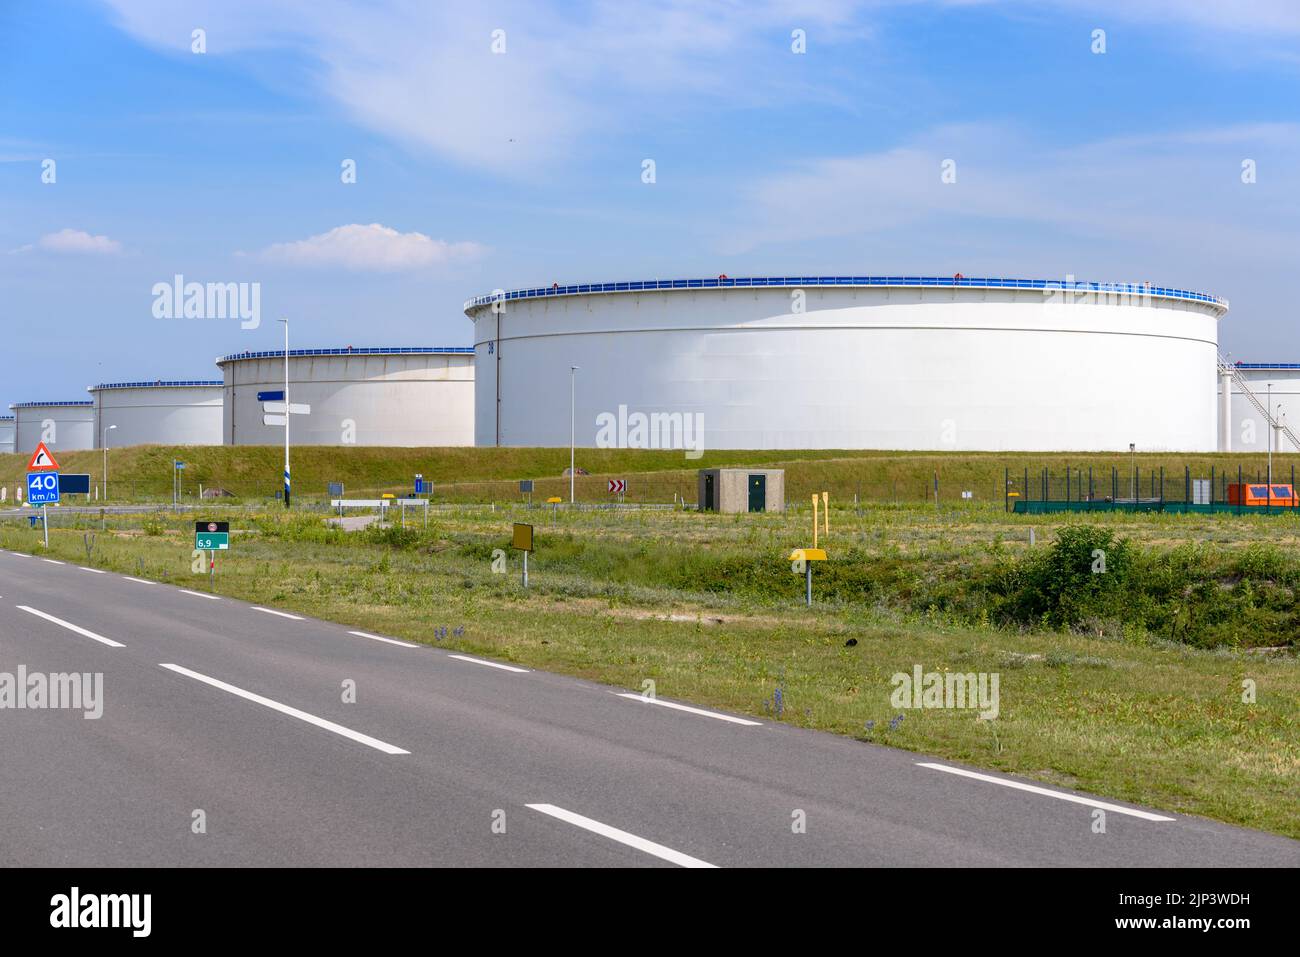 Grandes tanques de crudo en una terminal de petróleo en un soleado día de verano. Puerto de Rotterdam, Países Bajos. Foto de stock